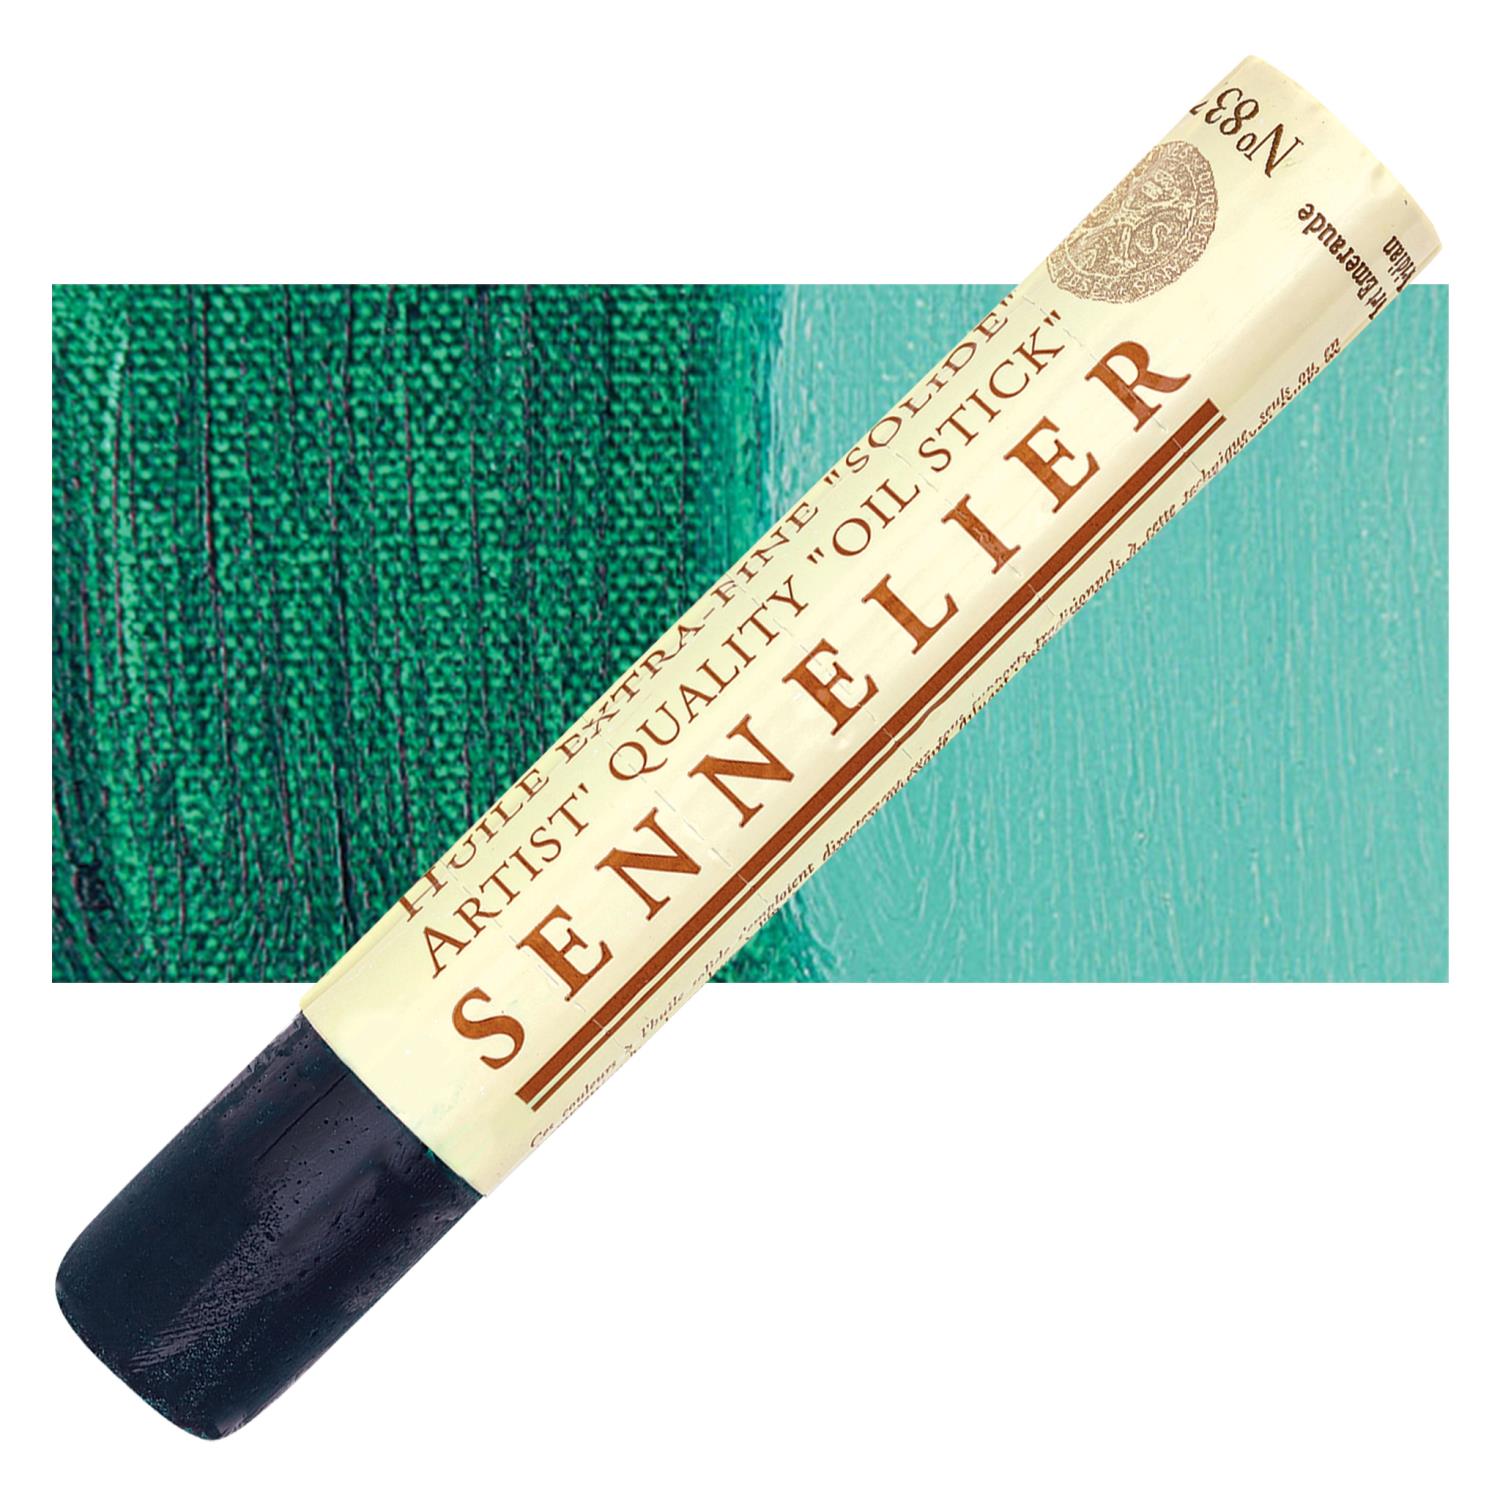 Sennelier Artist Oil Stick 38ml - 837 Viridian S1 utgår